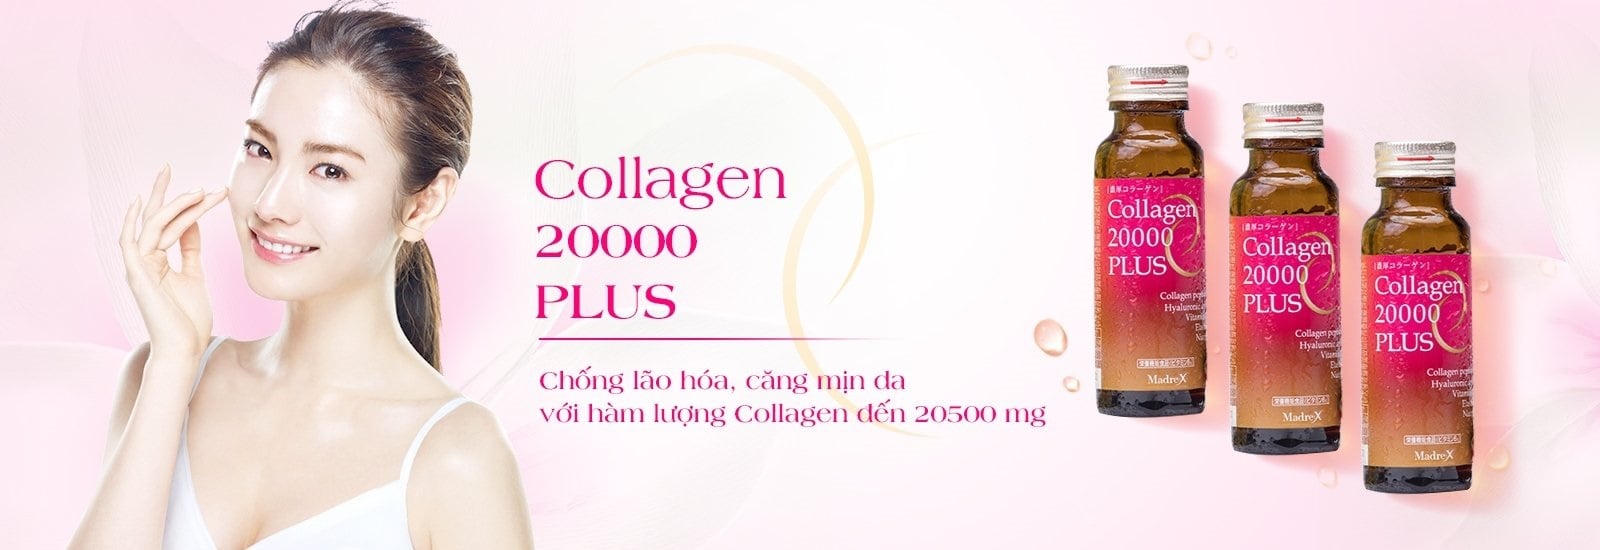 nuoc-uong-collagen-20000-plus